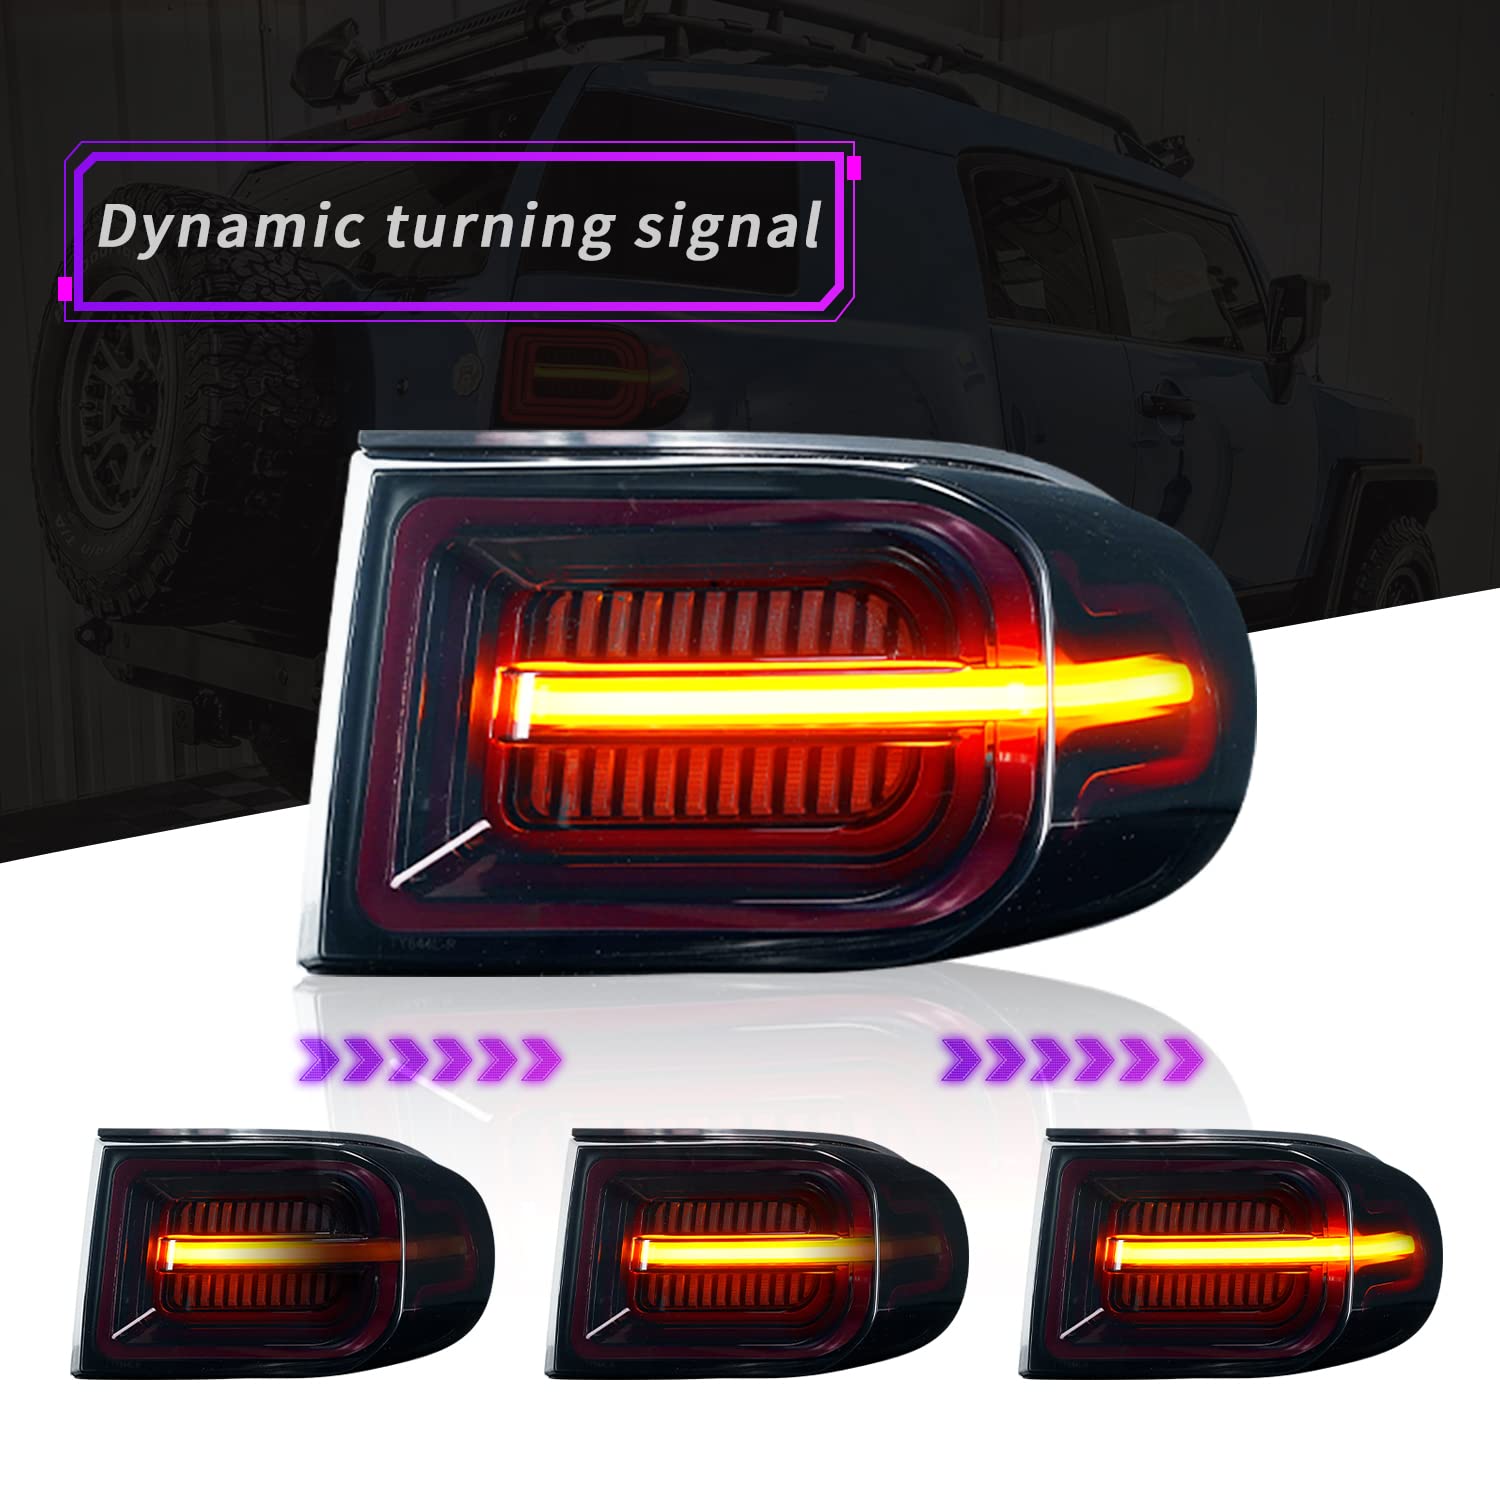 Full LED Tail Light Assembly | Toyota FJ Cruiser | Plug & Play